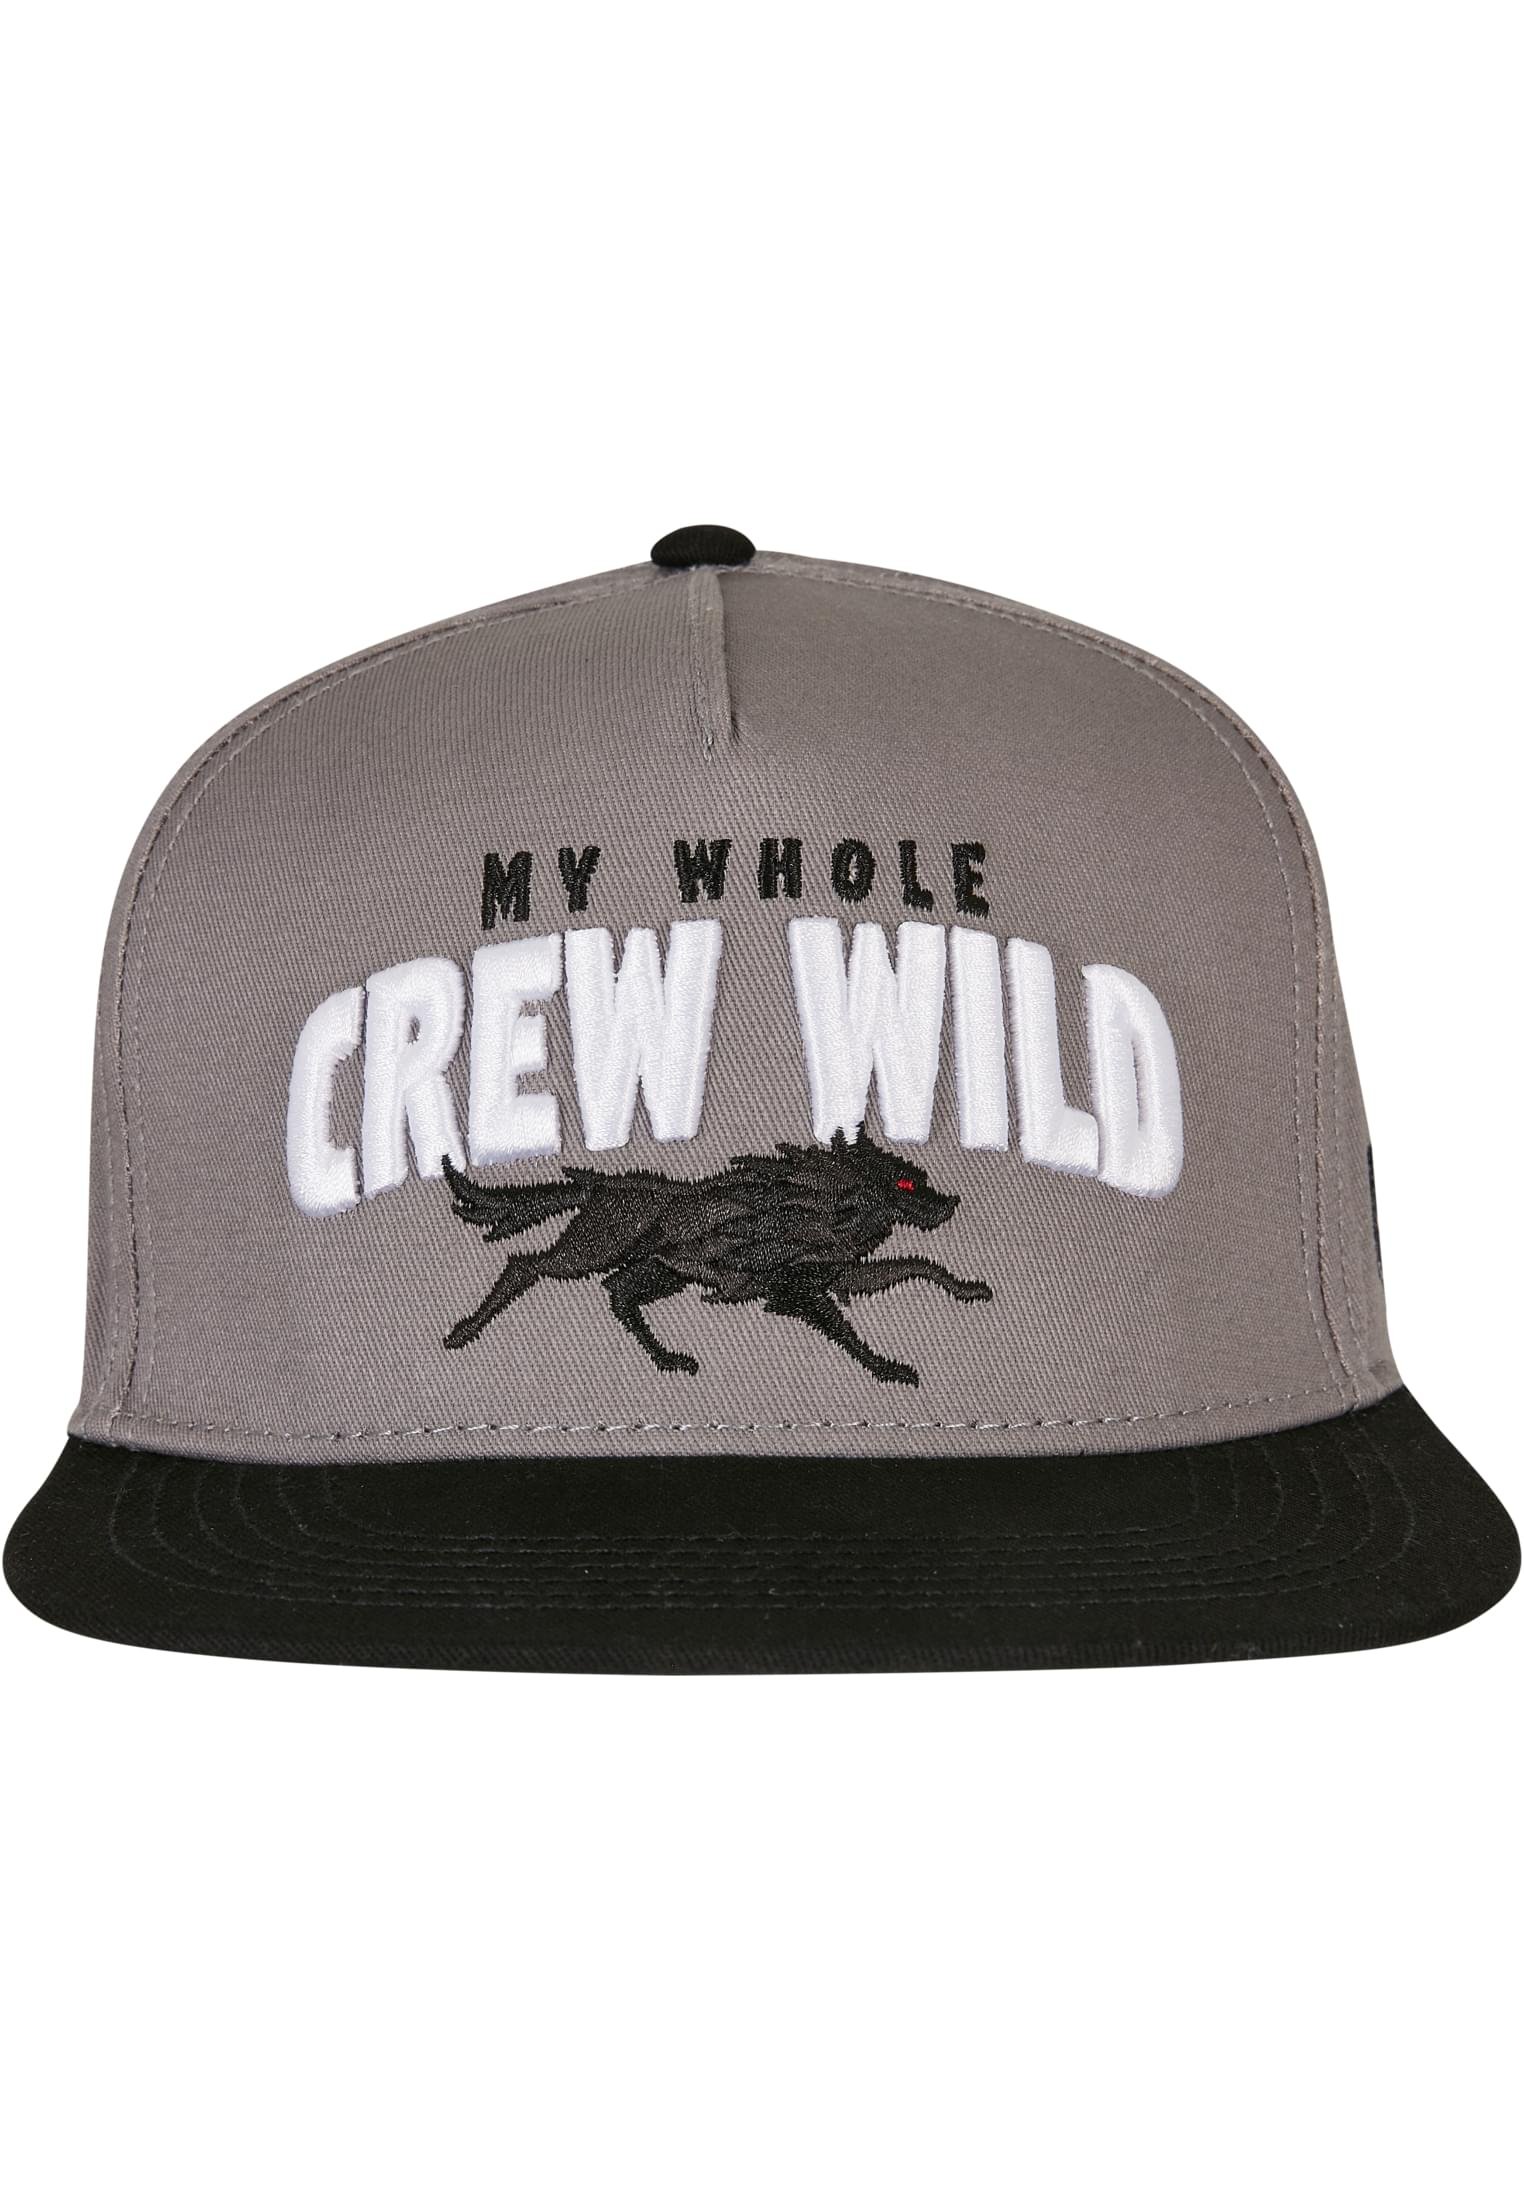 Crew Wild Cap grey/black one size